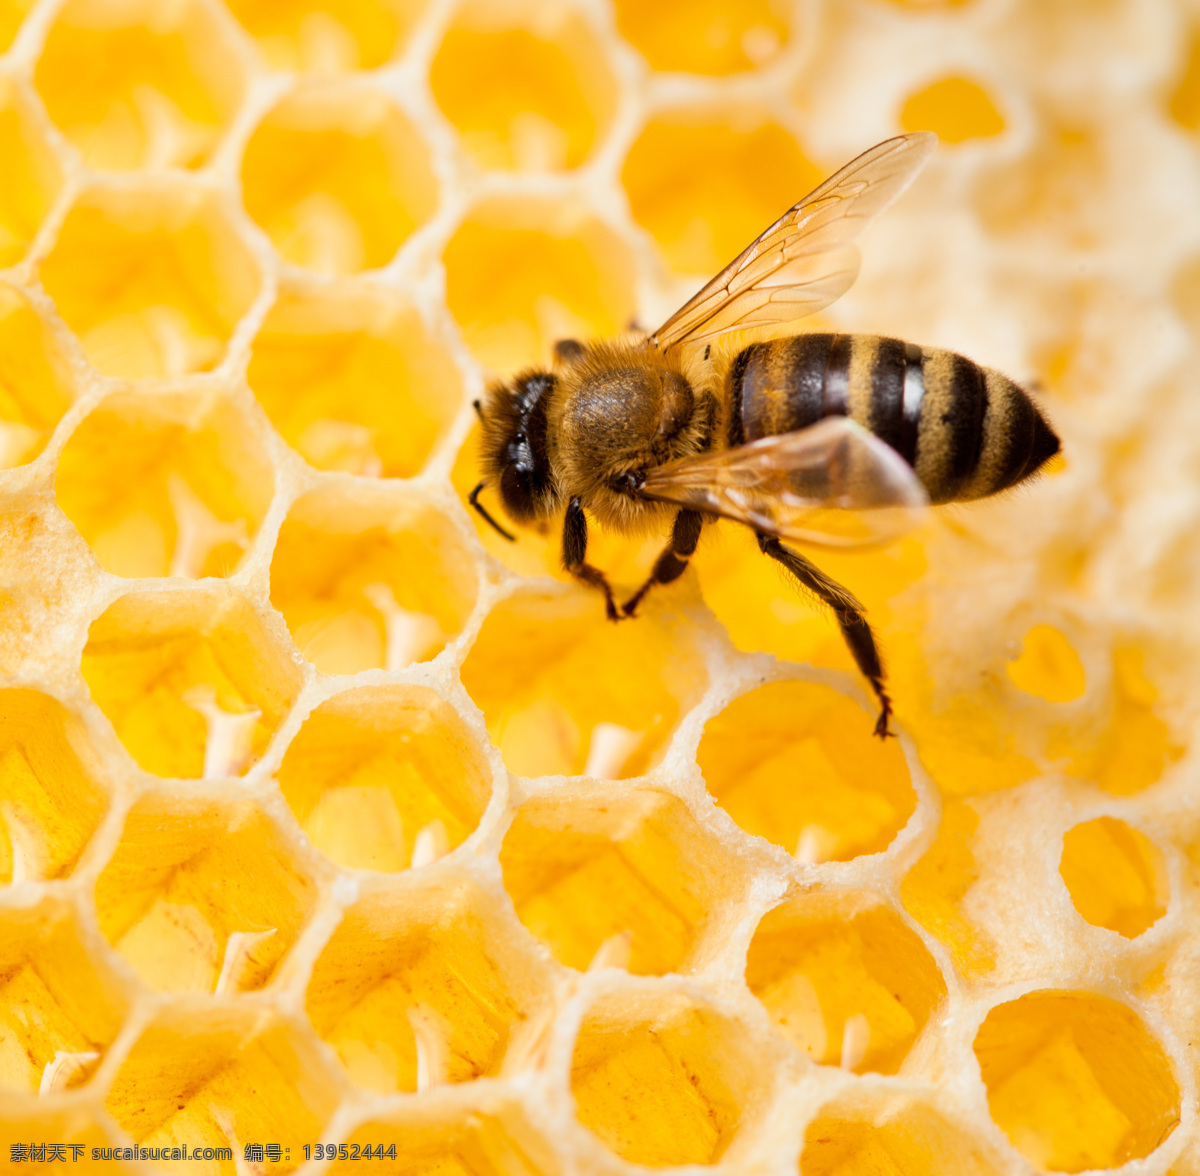 蜜蜂 蜂蜜 花蜜 蜜糖 蜂蜜水 天然蜂蜜 手工蜂蜜 手工花蜜 天然花蜜 蜂窝蜜 纯天然蜂蜜 纯手工蜂蜜 蜂蜜巢 蜂巢 蜂巢蜜 餐饮美食 食物原料